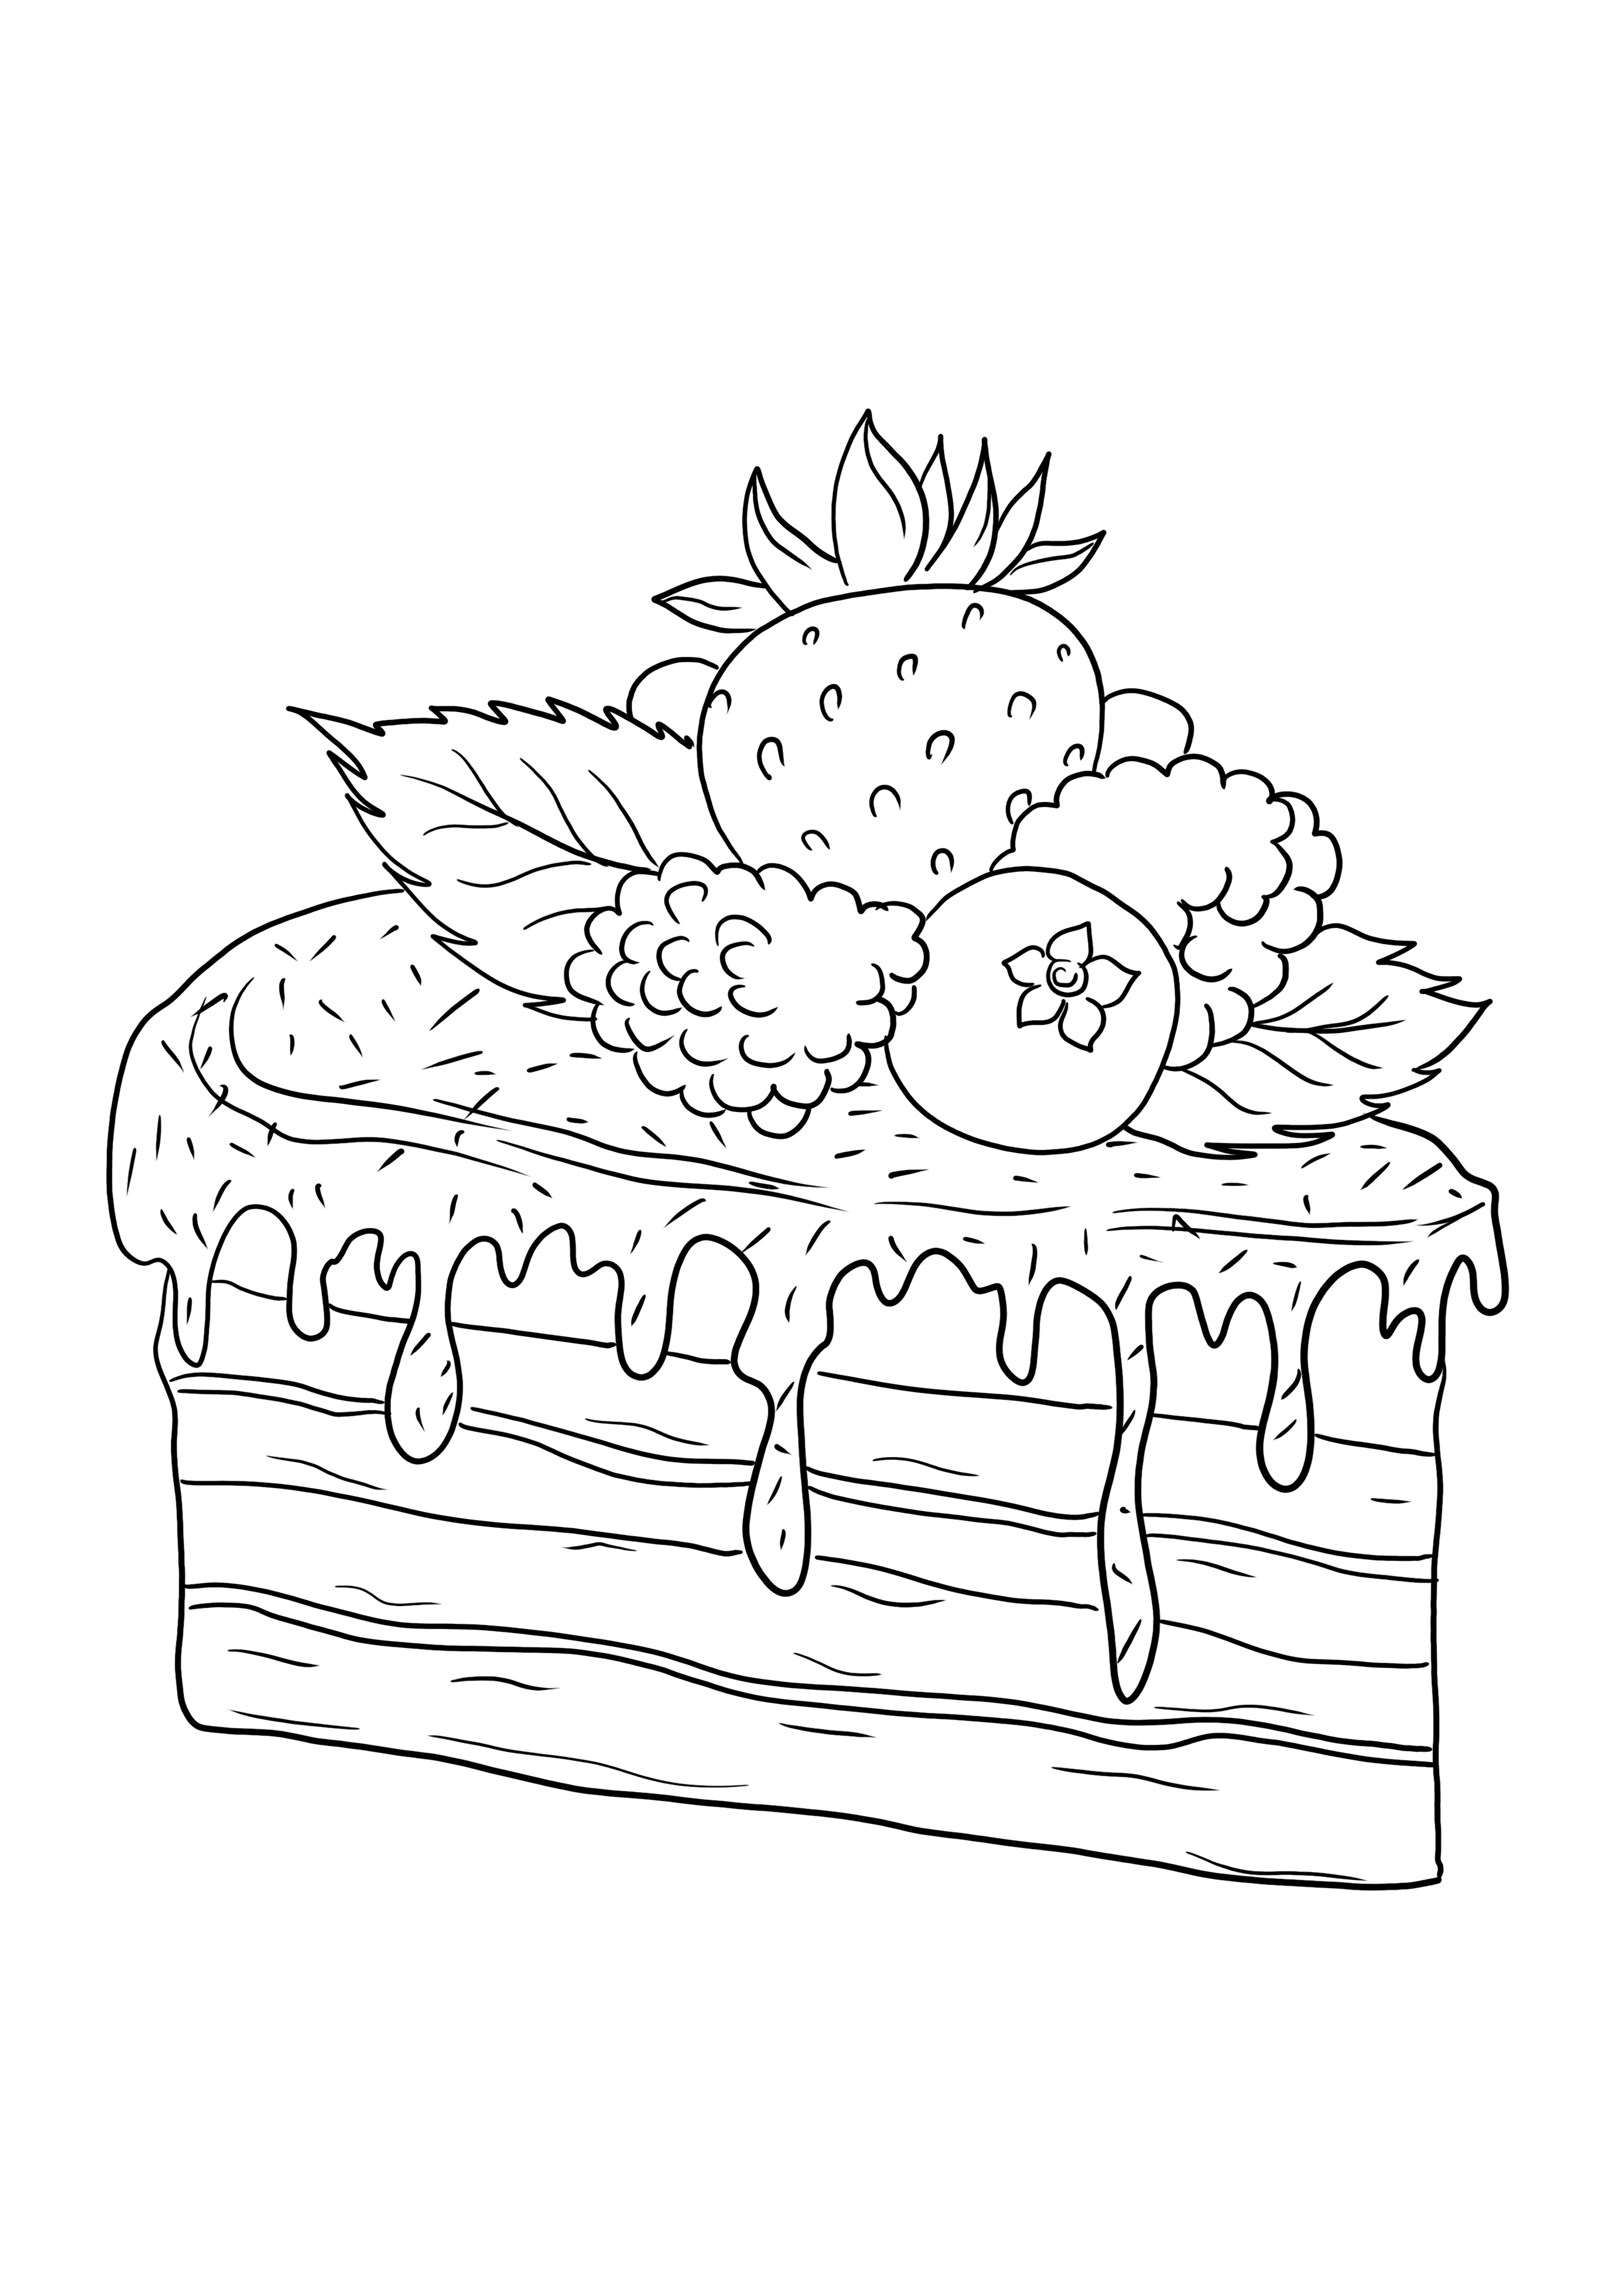 Tort owocowy do kolorowania bez arkuszy do wydrukowania lub zapisania na później dla dzieci